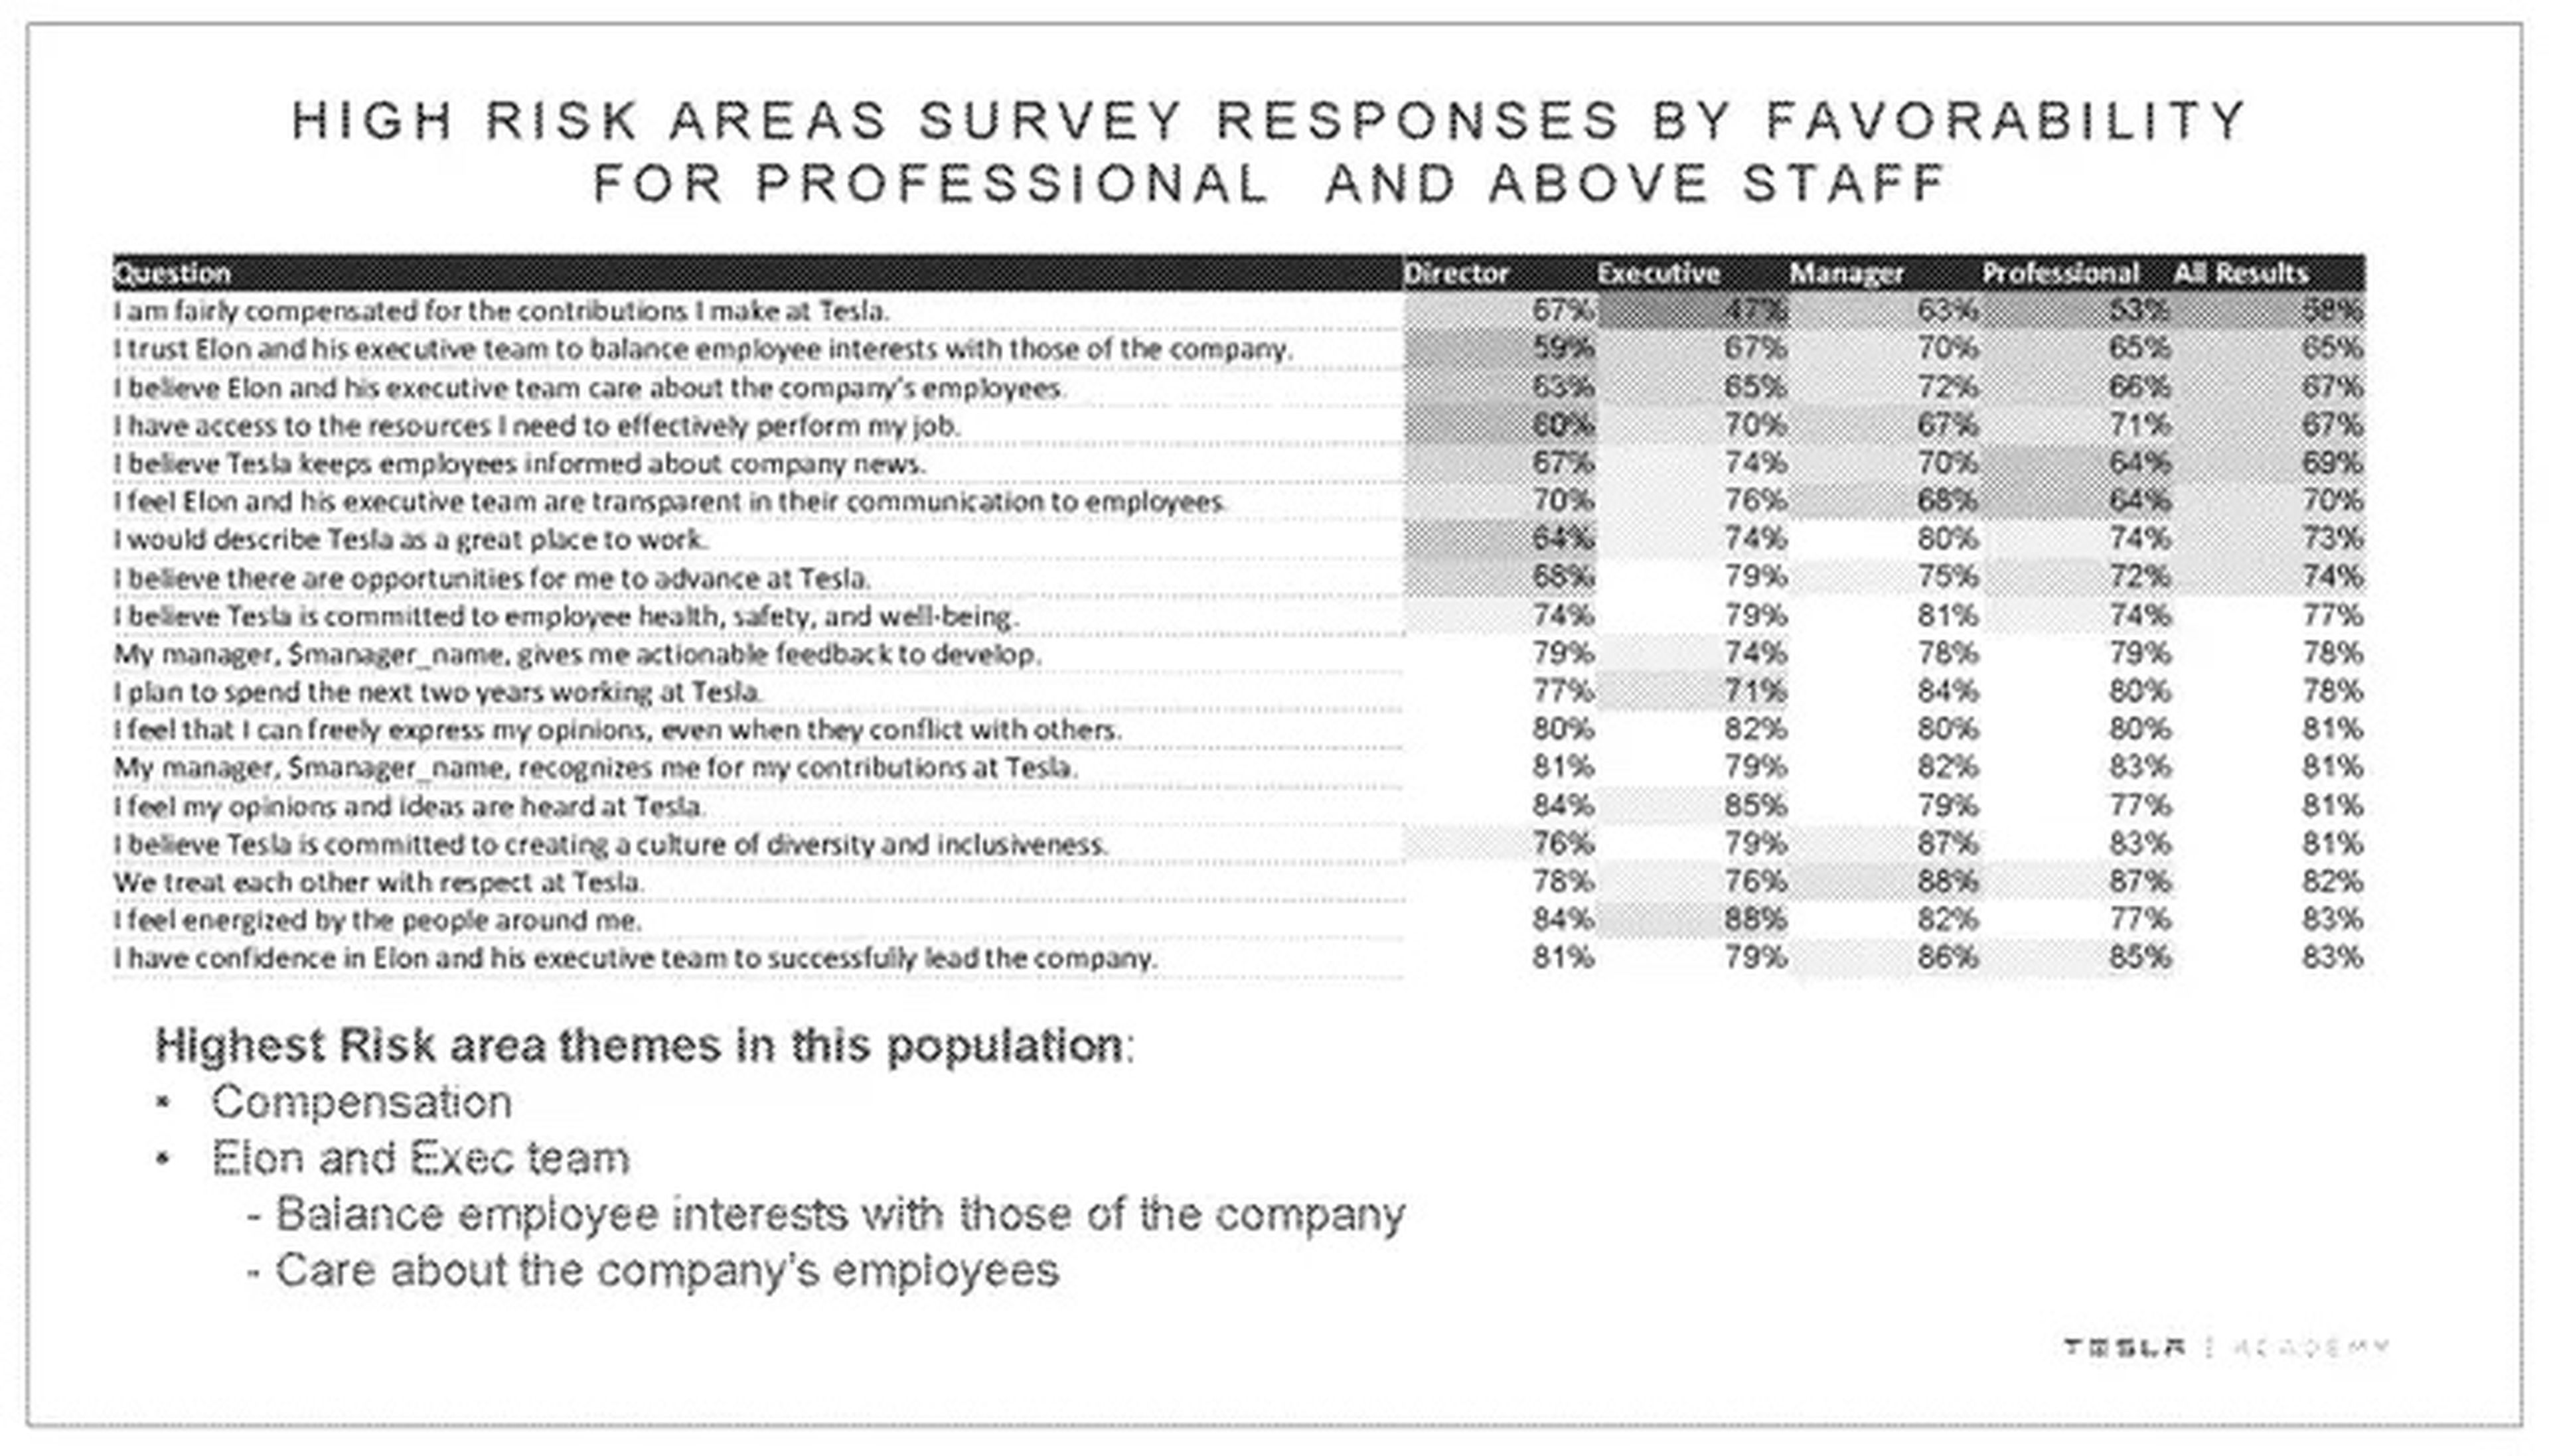 Una captura de la encuesta de empleados de Tesla de 2018, que muestra las respuestas de los profesionales, gerentes, ejecutivos y directores de Tesla.